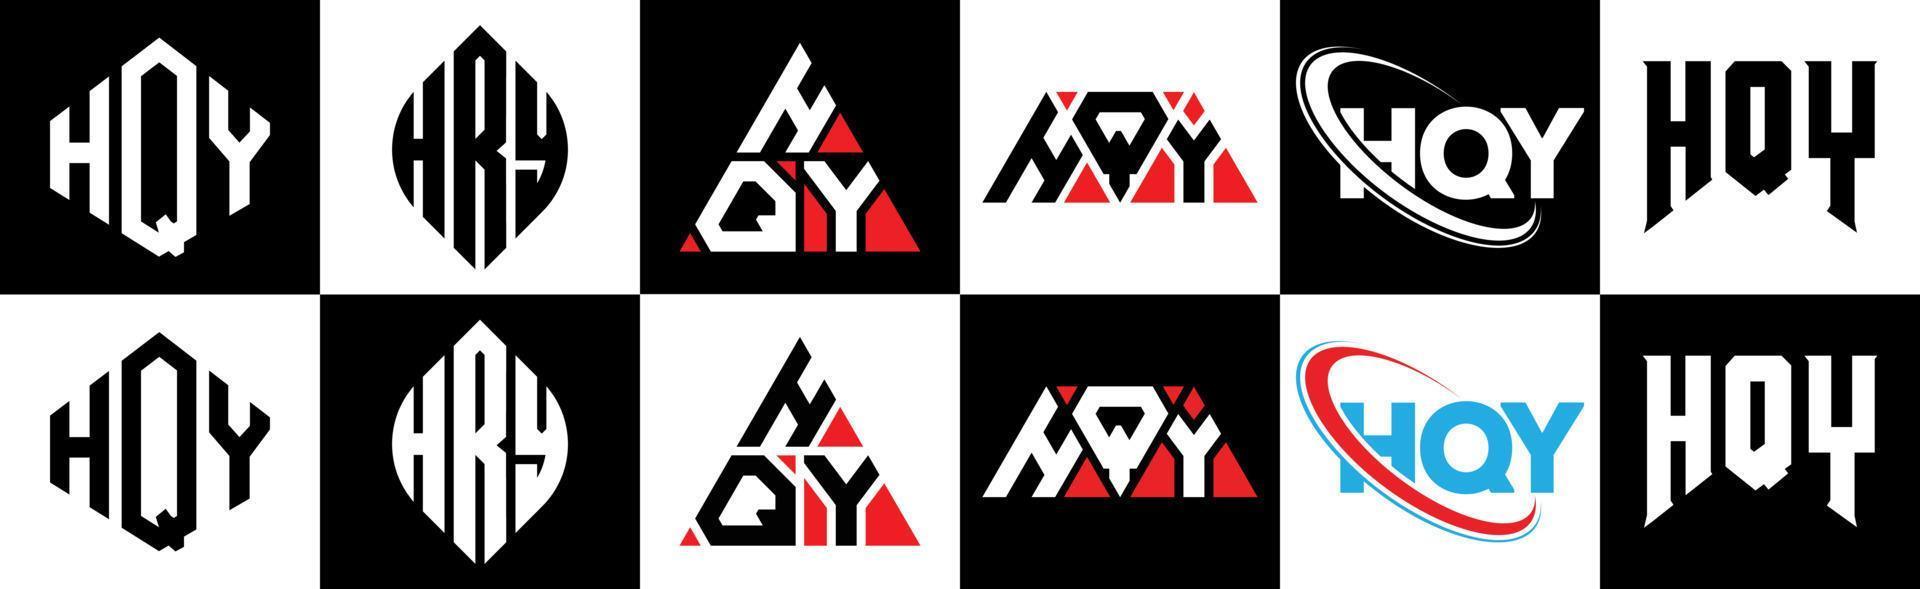 hqy brief logo ontwerp in zes stijl. hqy veelhoek, cirkel, driehoek, zeshoek, vlak en gemakkelijk stijl met zwart en wit kleur variatie brief logo reeks in een tekengebied. hqy minimalistische en klassiek logo vector